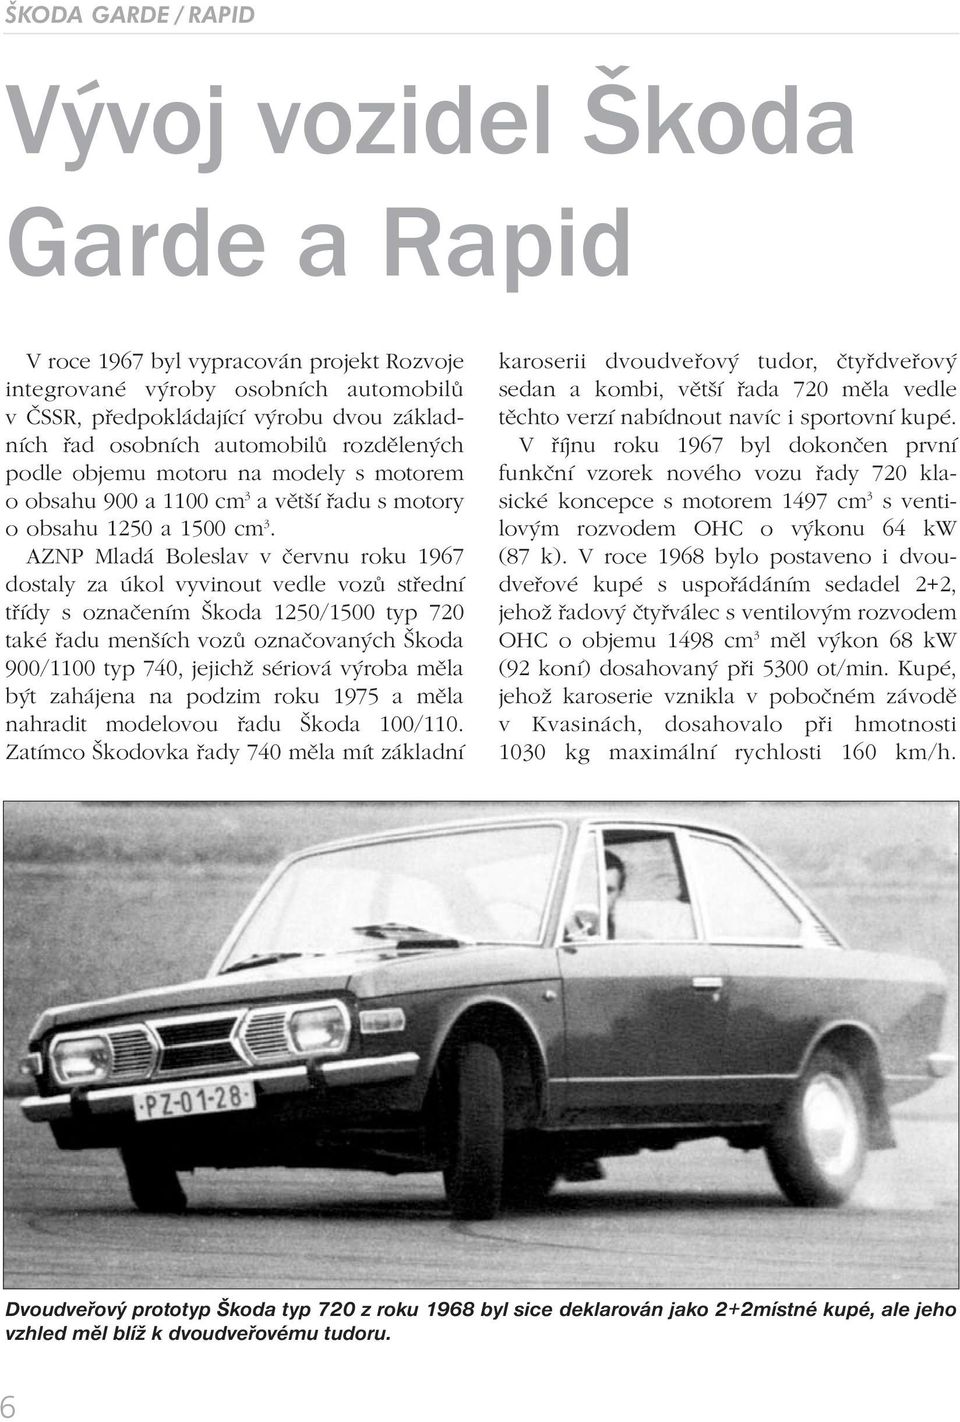 AZNP Mladá Boleslav v červnu roku 1967 dostaly za úkol vyvinout vedle vozů střední třídy s označením Škoda 1250/1500 typ 720 také řadu menších vozů označovaných Škoda 900/1100 typ 740, jejichž